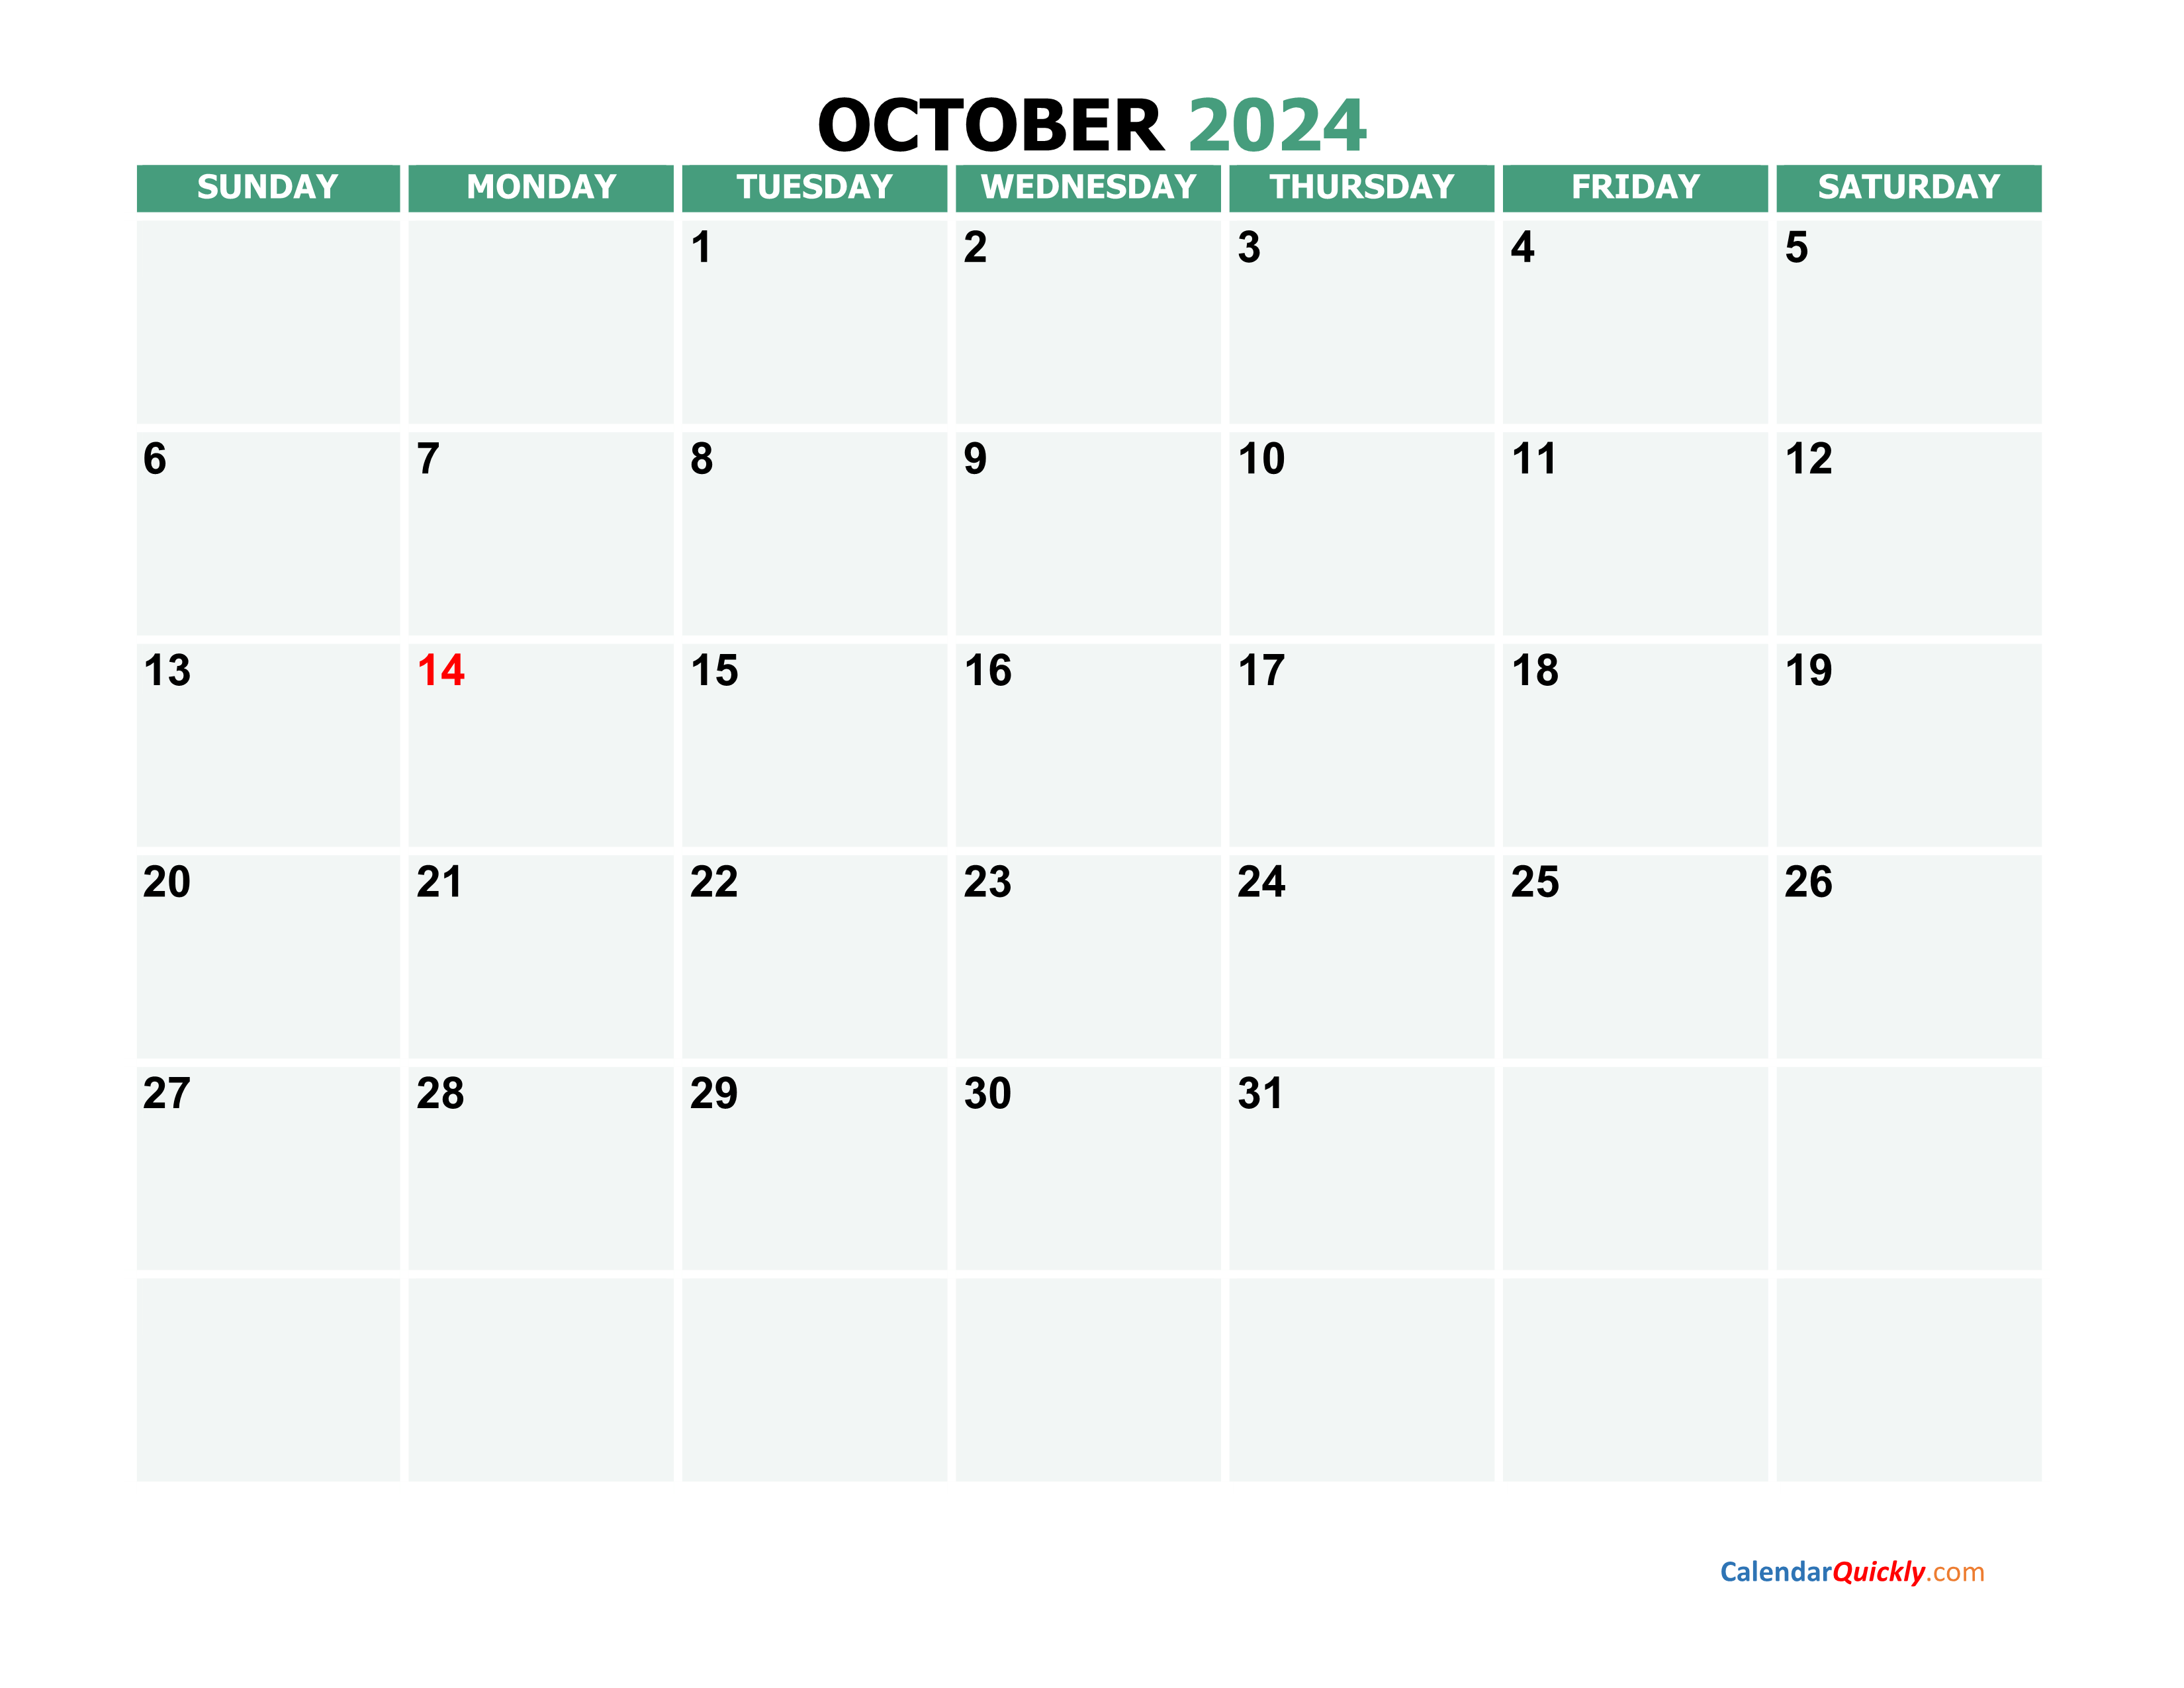 october 2024 calendars calendar quickly